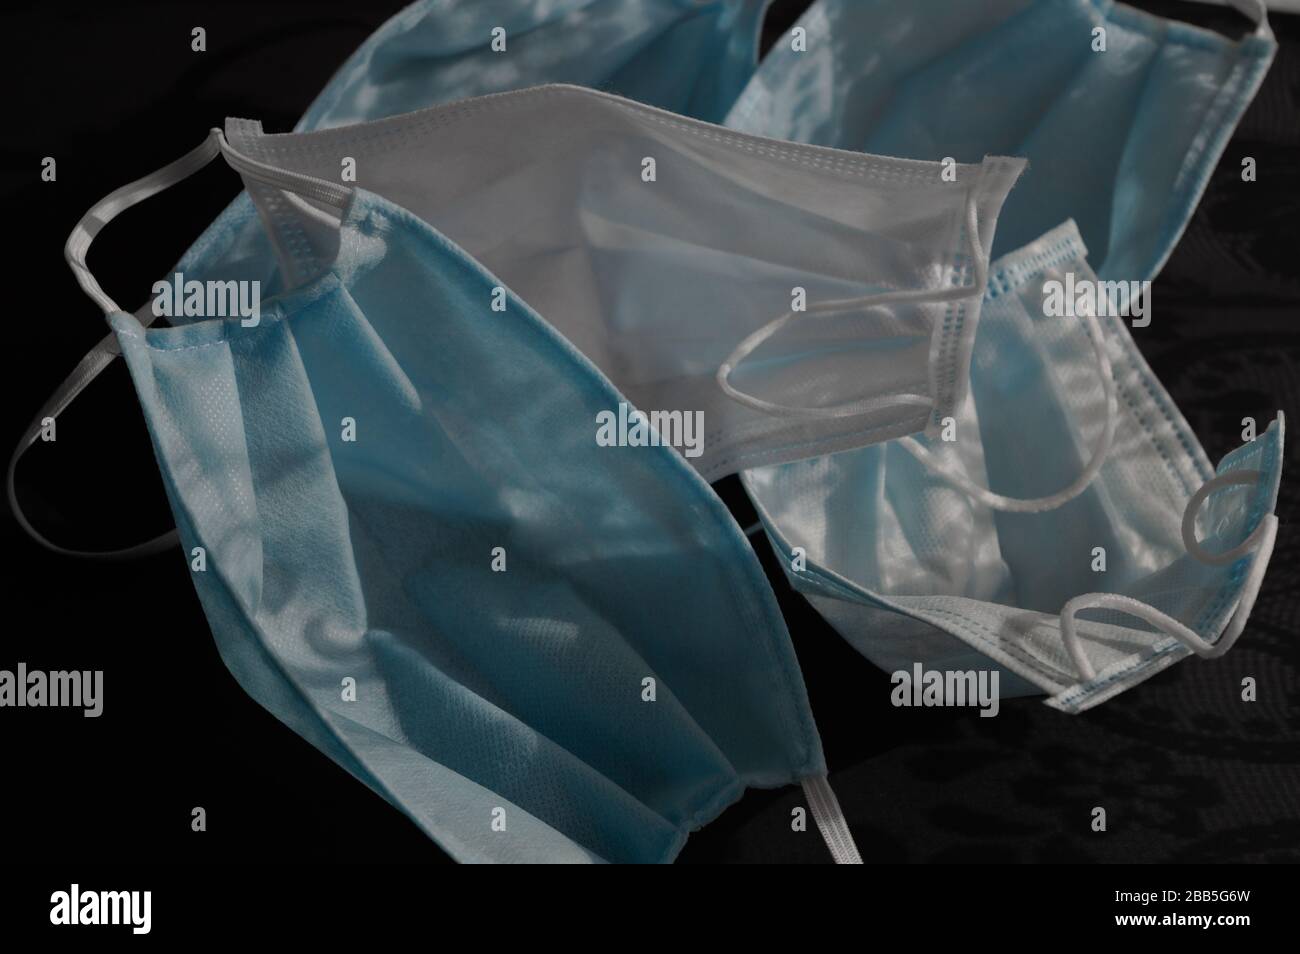 Cinq masques médicaux jetables à usage bleu clair sur fond noir foncé avec ornements d'ombres contre le virus covid-2019. Concept de soins de santé Banque D'Images